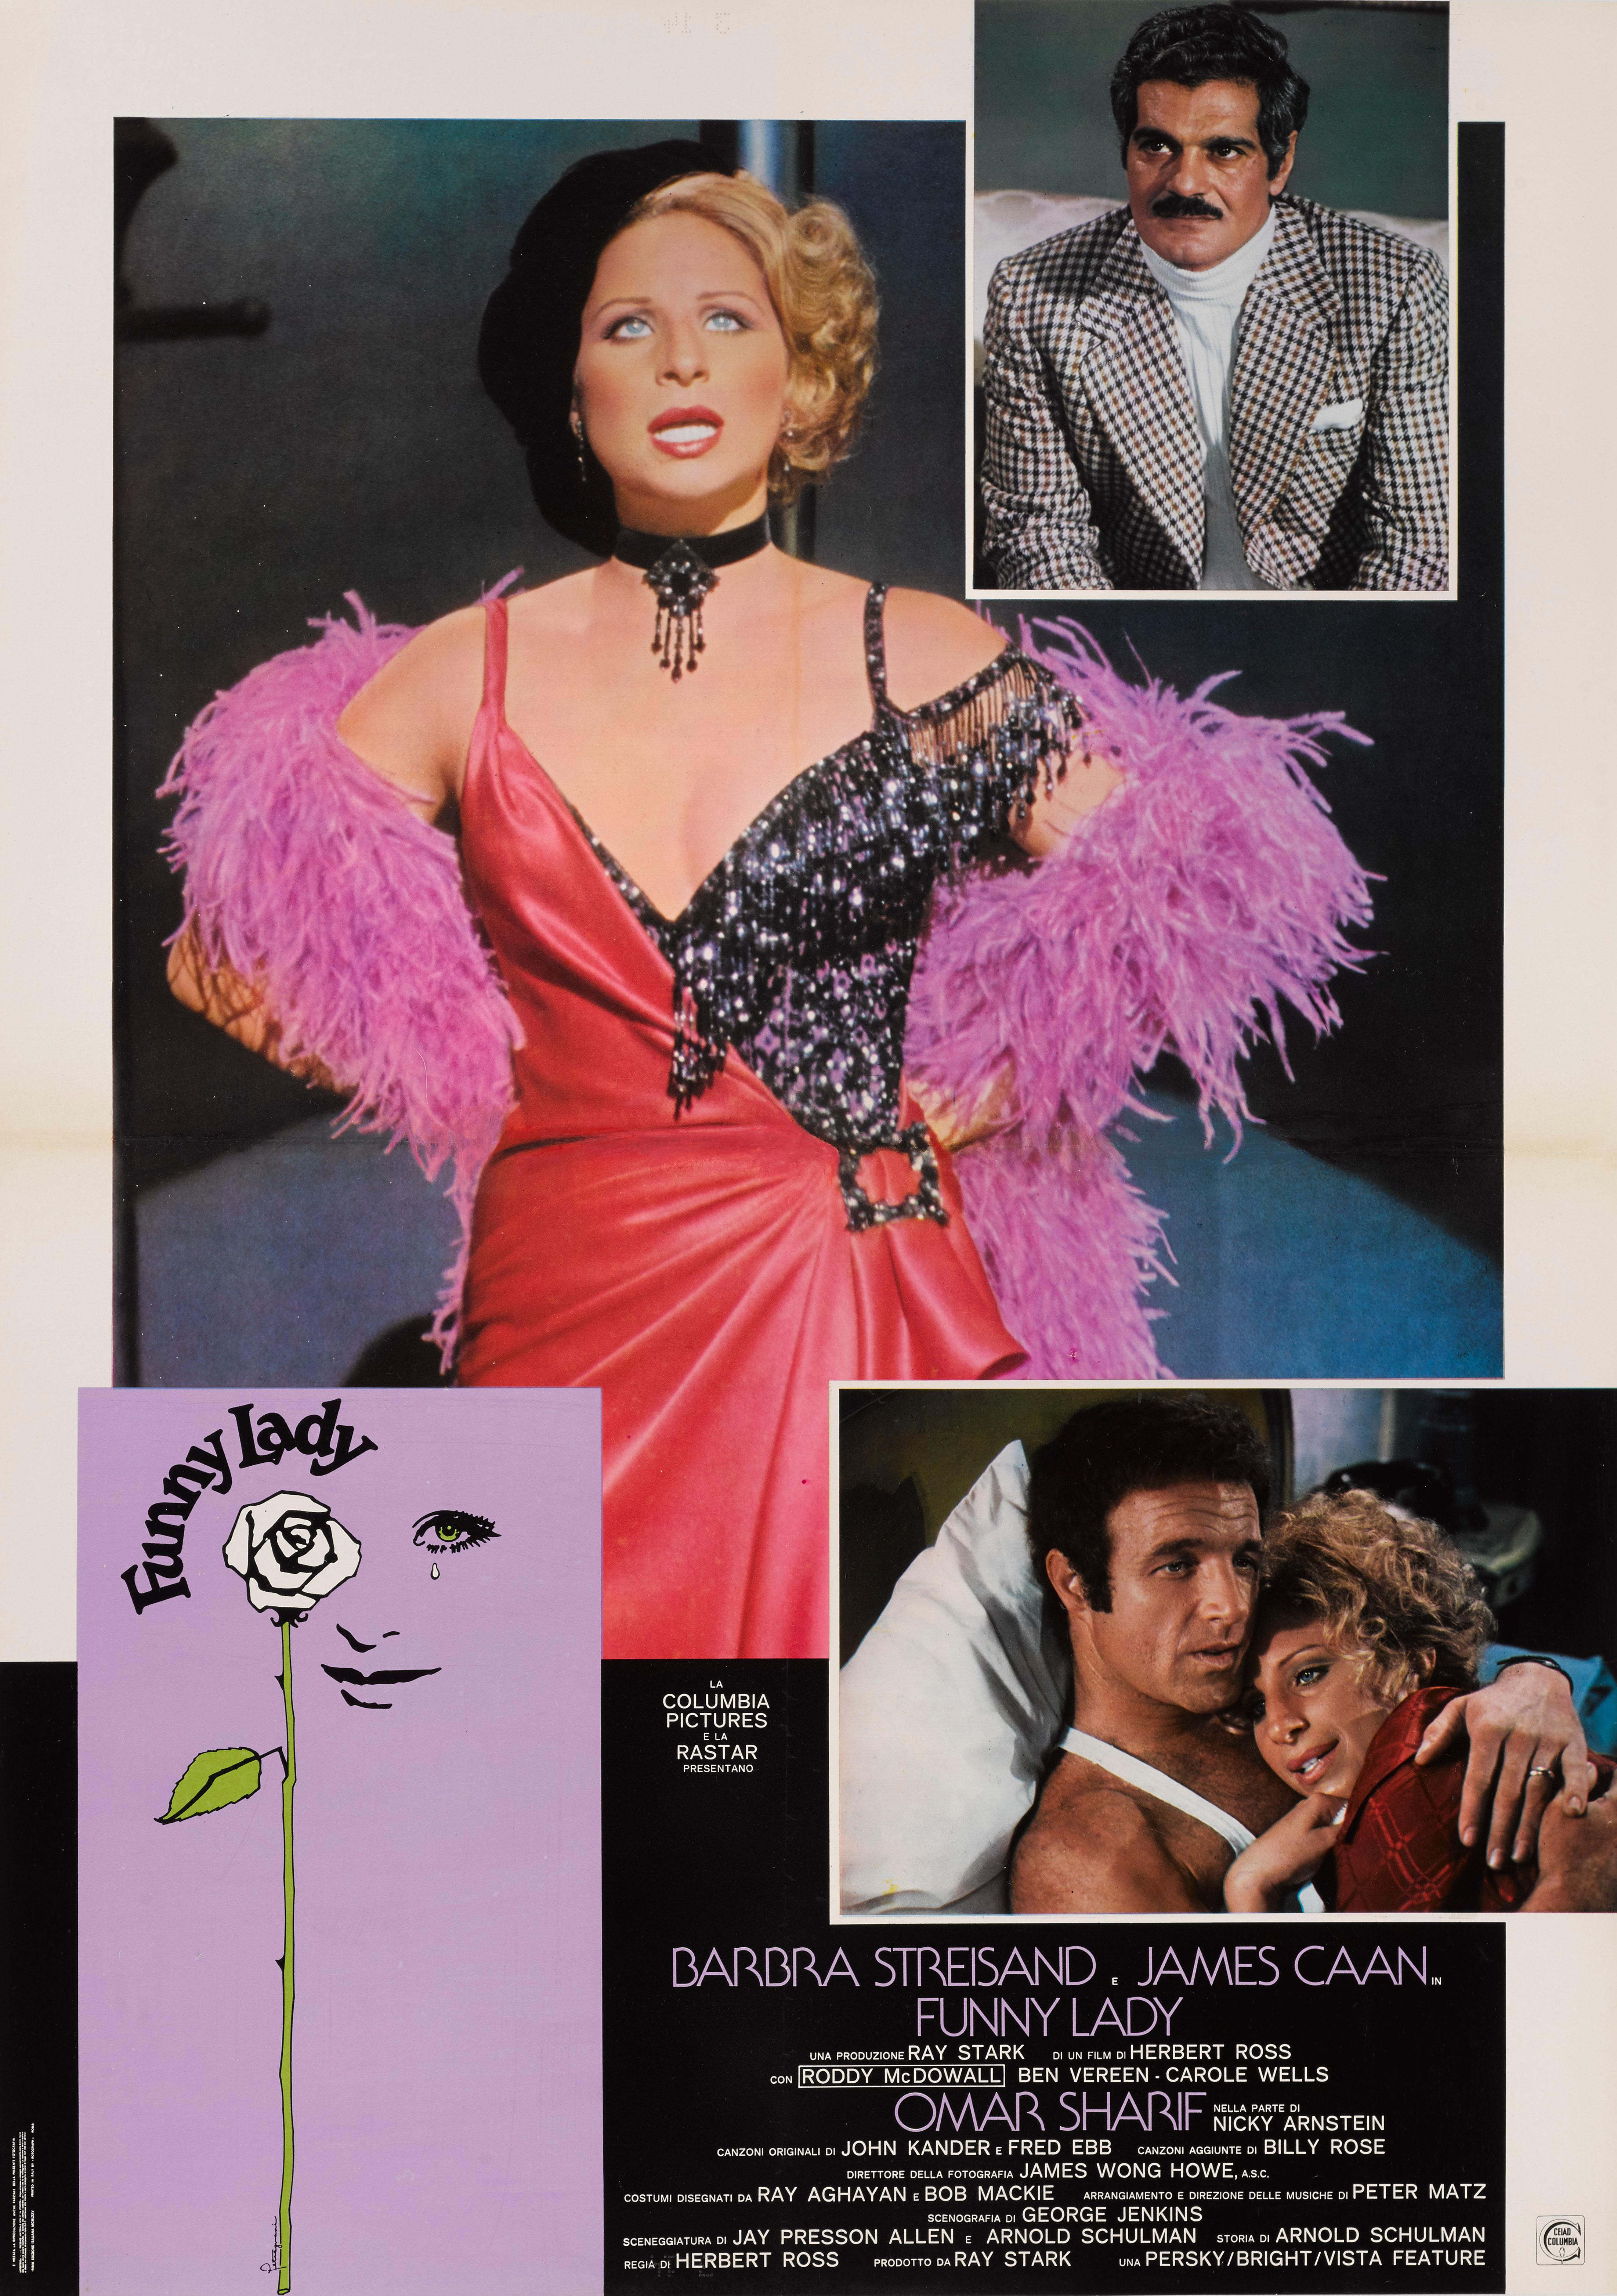 Originales italienisches Filmplakat für die Komödie von 1975 mit Barbra Streisand, James Caan und Omar Sharif in den Hauptrollen.
Bei dem Film führte Herbert Ross Regie.
Dieses Plakat ist Erhaltung Leinen zurück und es würde in einem starken Rohr